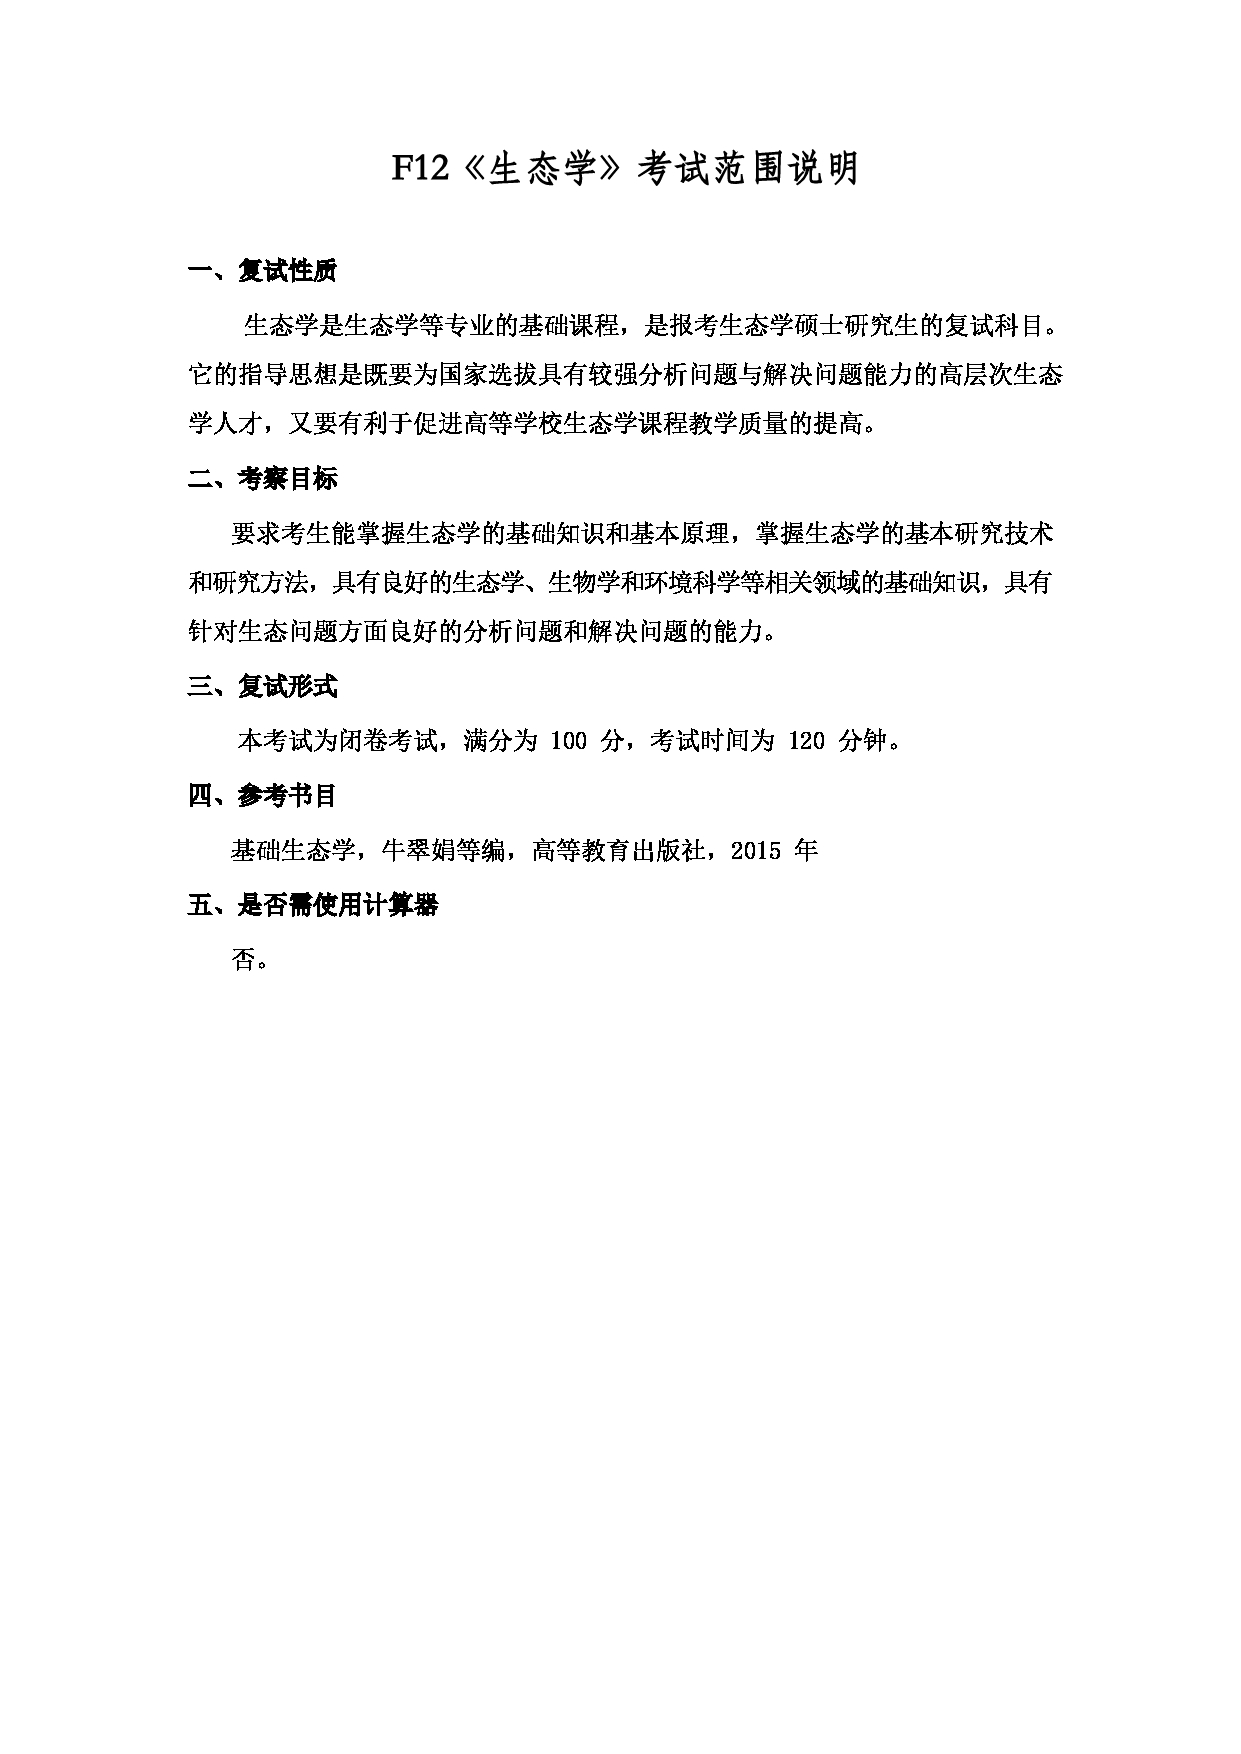 2022考研大纲：上海海洋大学2022年考研自命题科目 F12生态学 考试大纲第1页